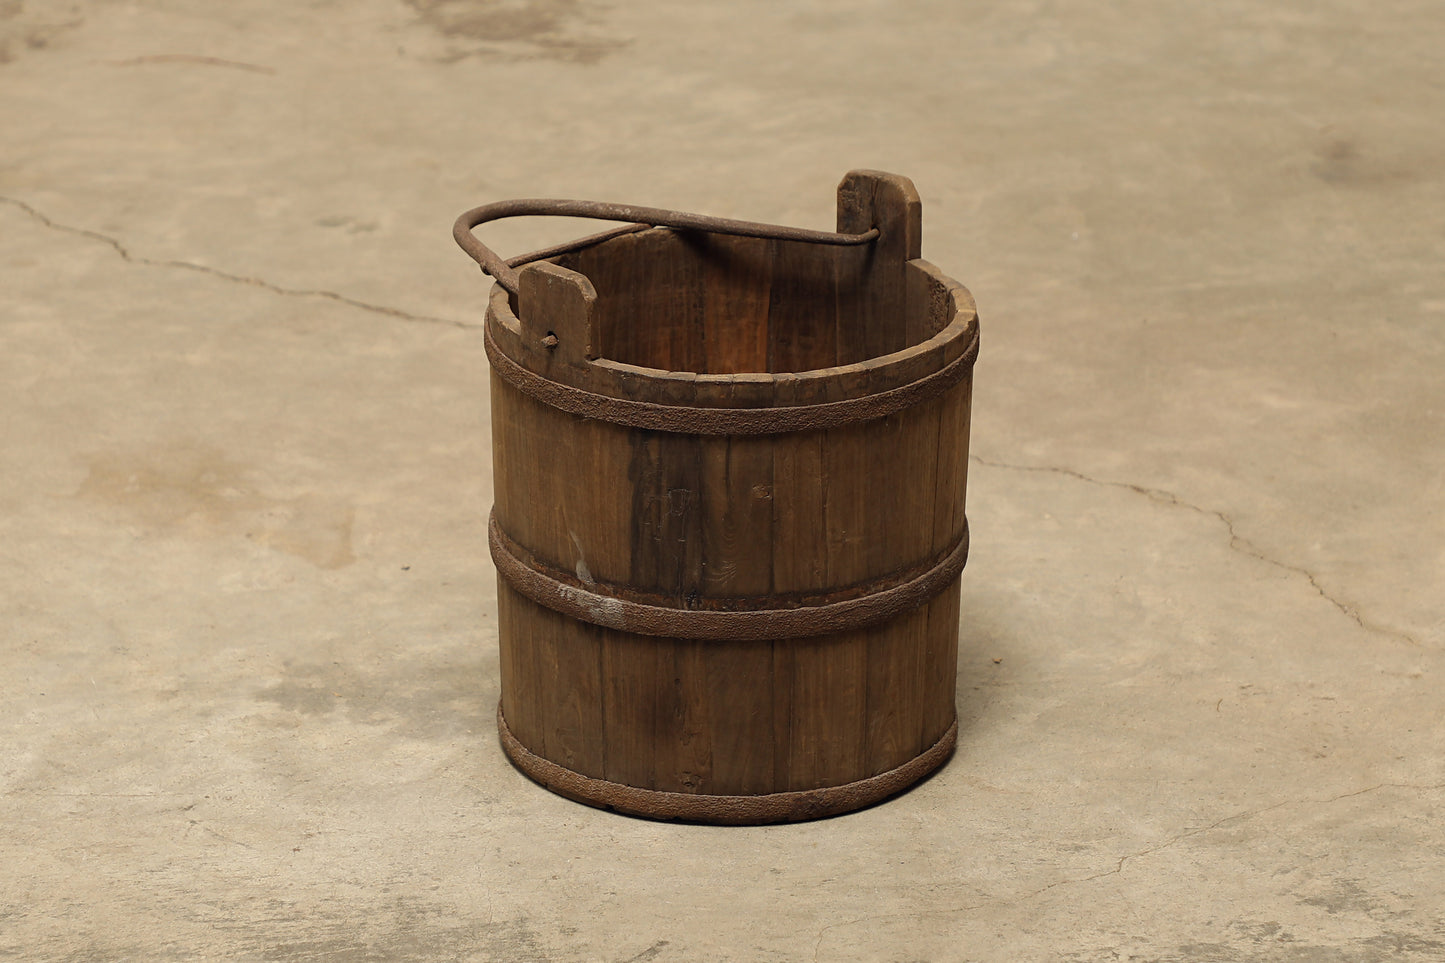 (GAW003) Vintage Poplar Bucket - Circa 1945 (13x13x14)